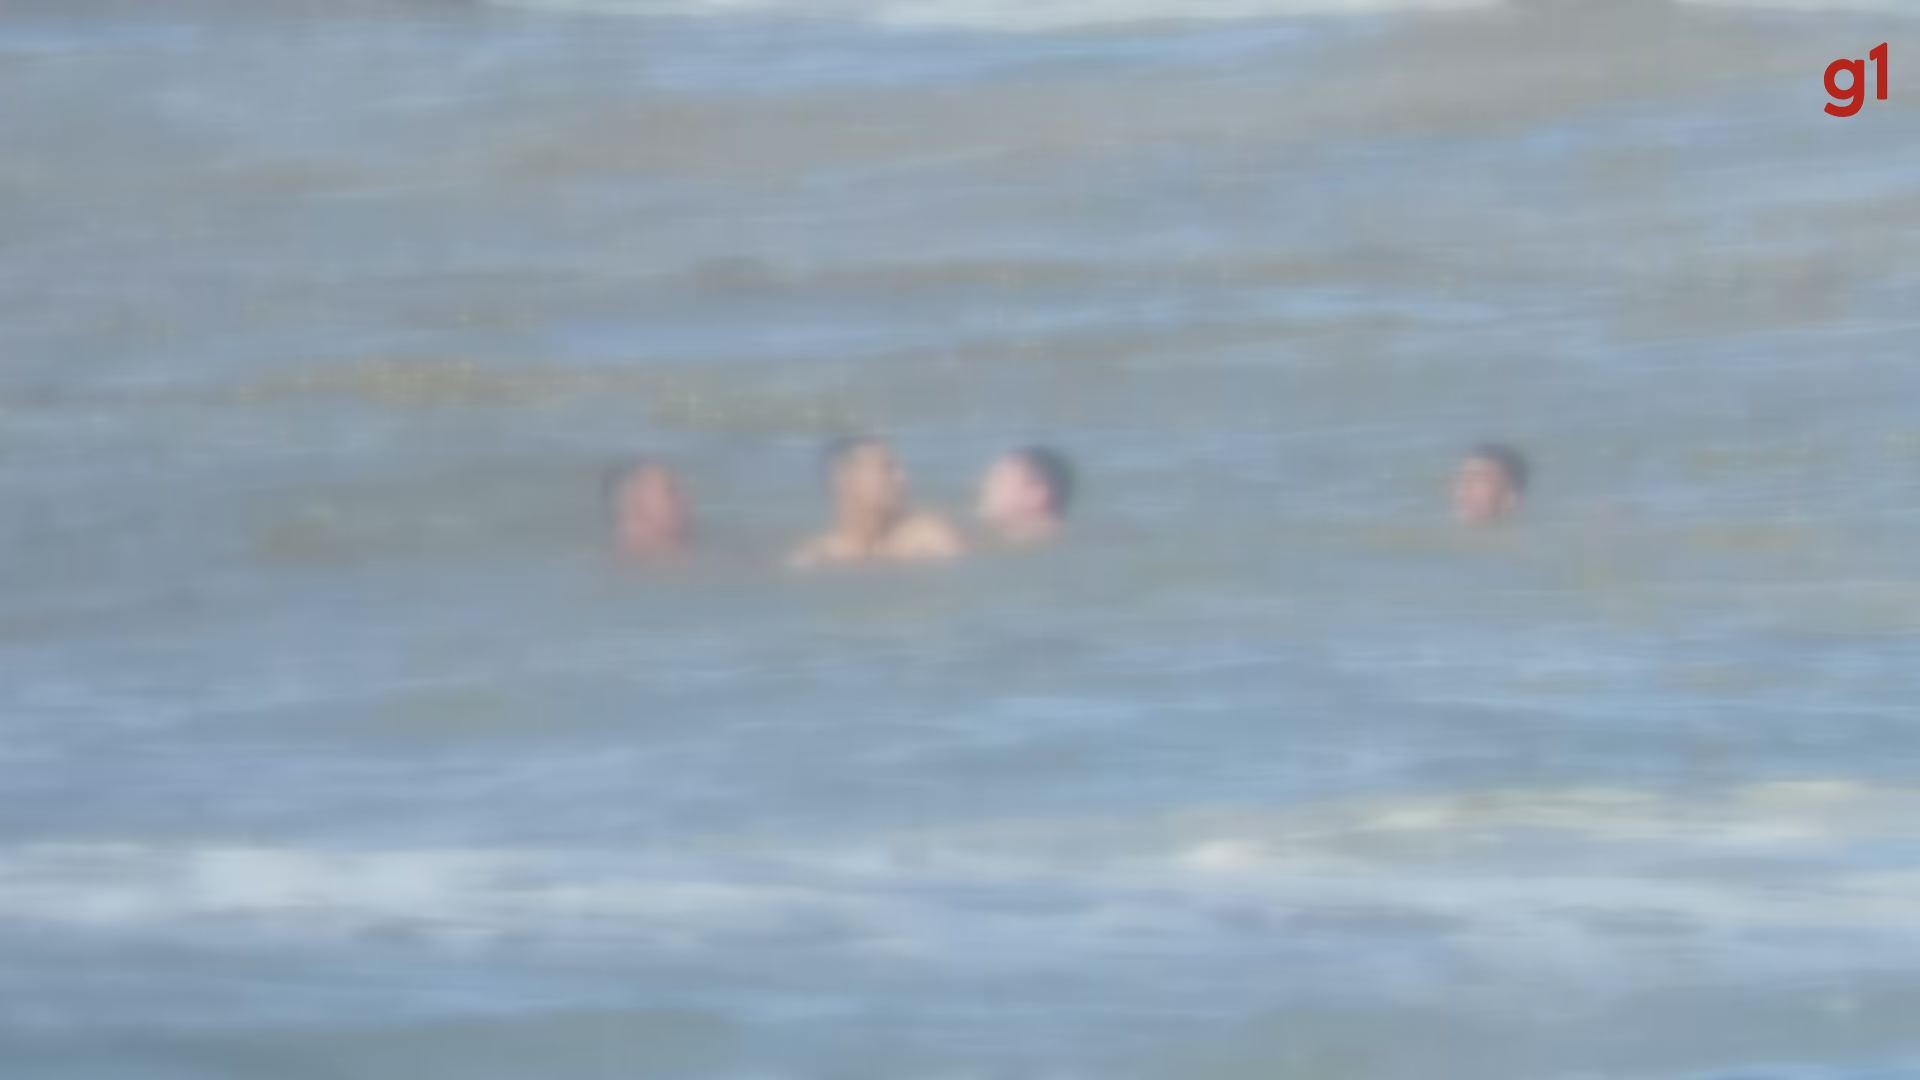 Bombeiro de folga salva pai e dois filhos que estavam sendo arrastados pelo mar no litoral de SP; VÍDEO